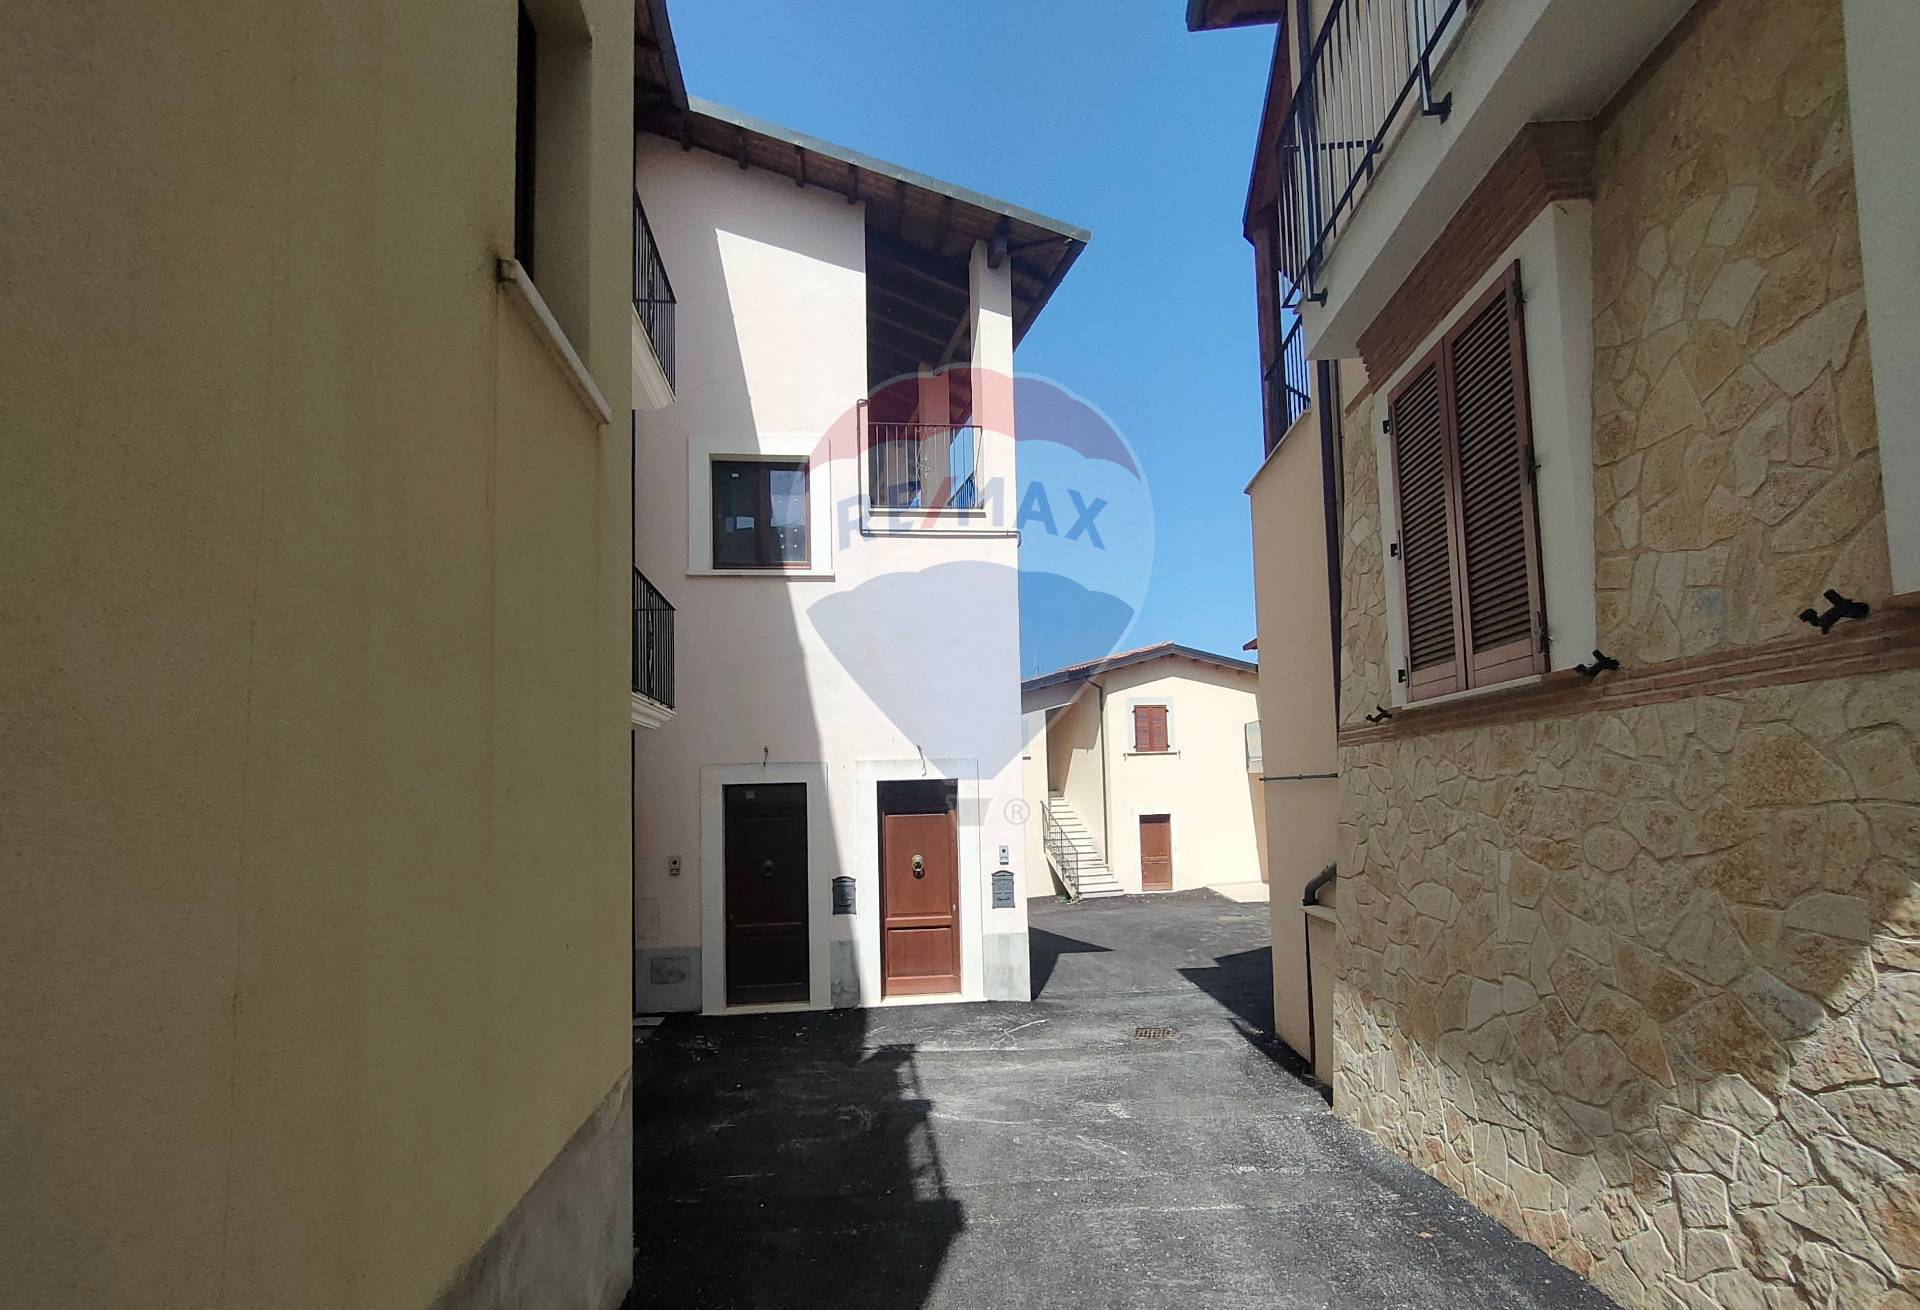 Soluzione Semindipendente in vendita a Villa Sant'Angelo, 3 locali, prezzo € 53.000 | PortaleAgenzieImmobiliari.it